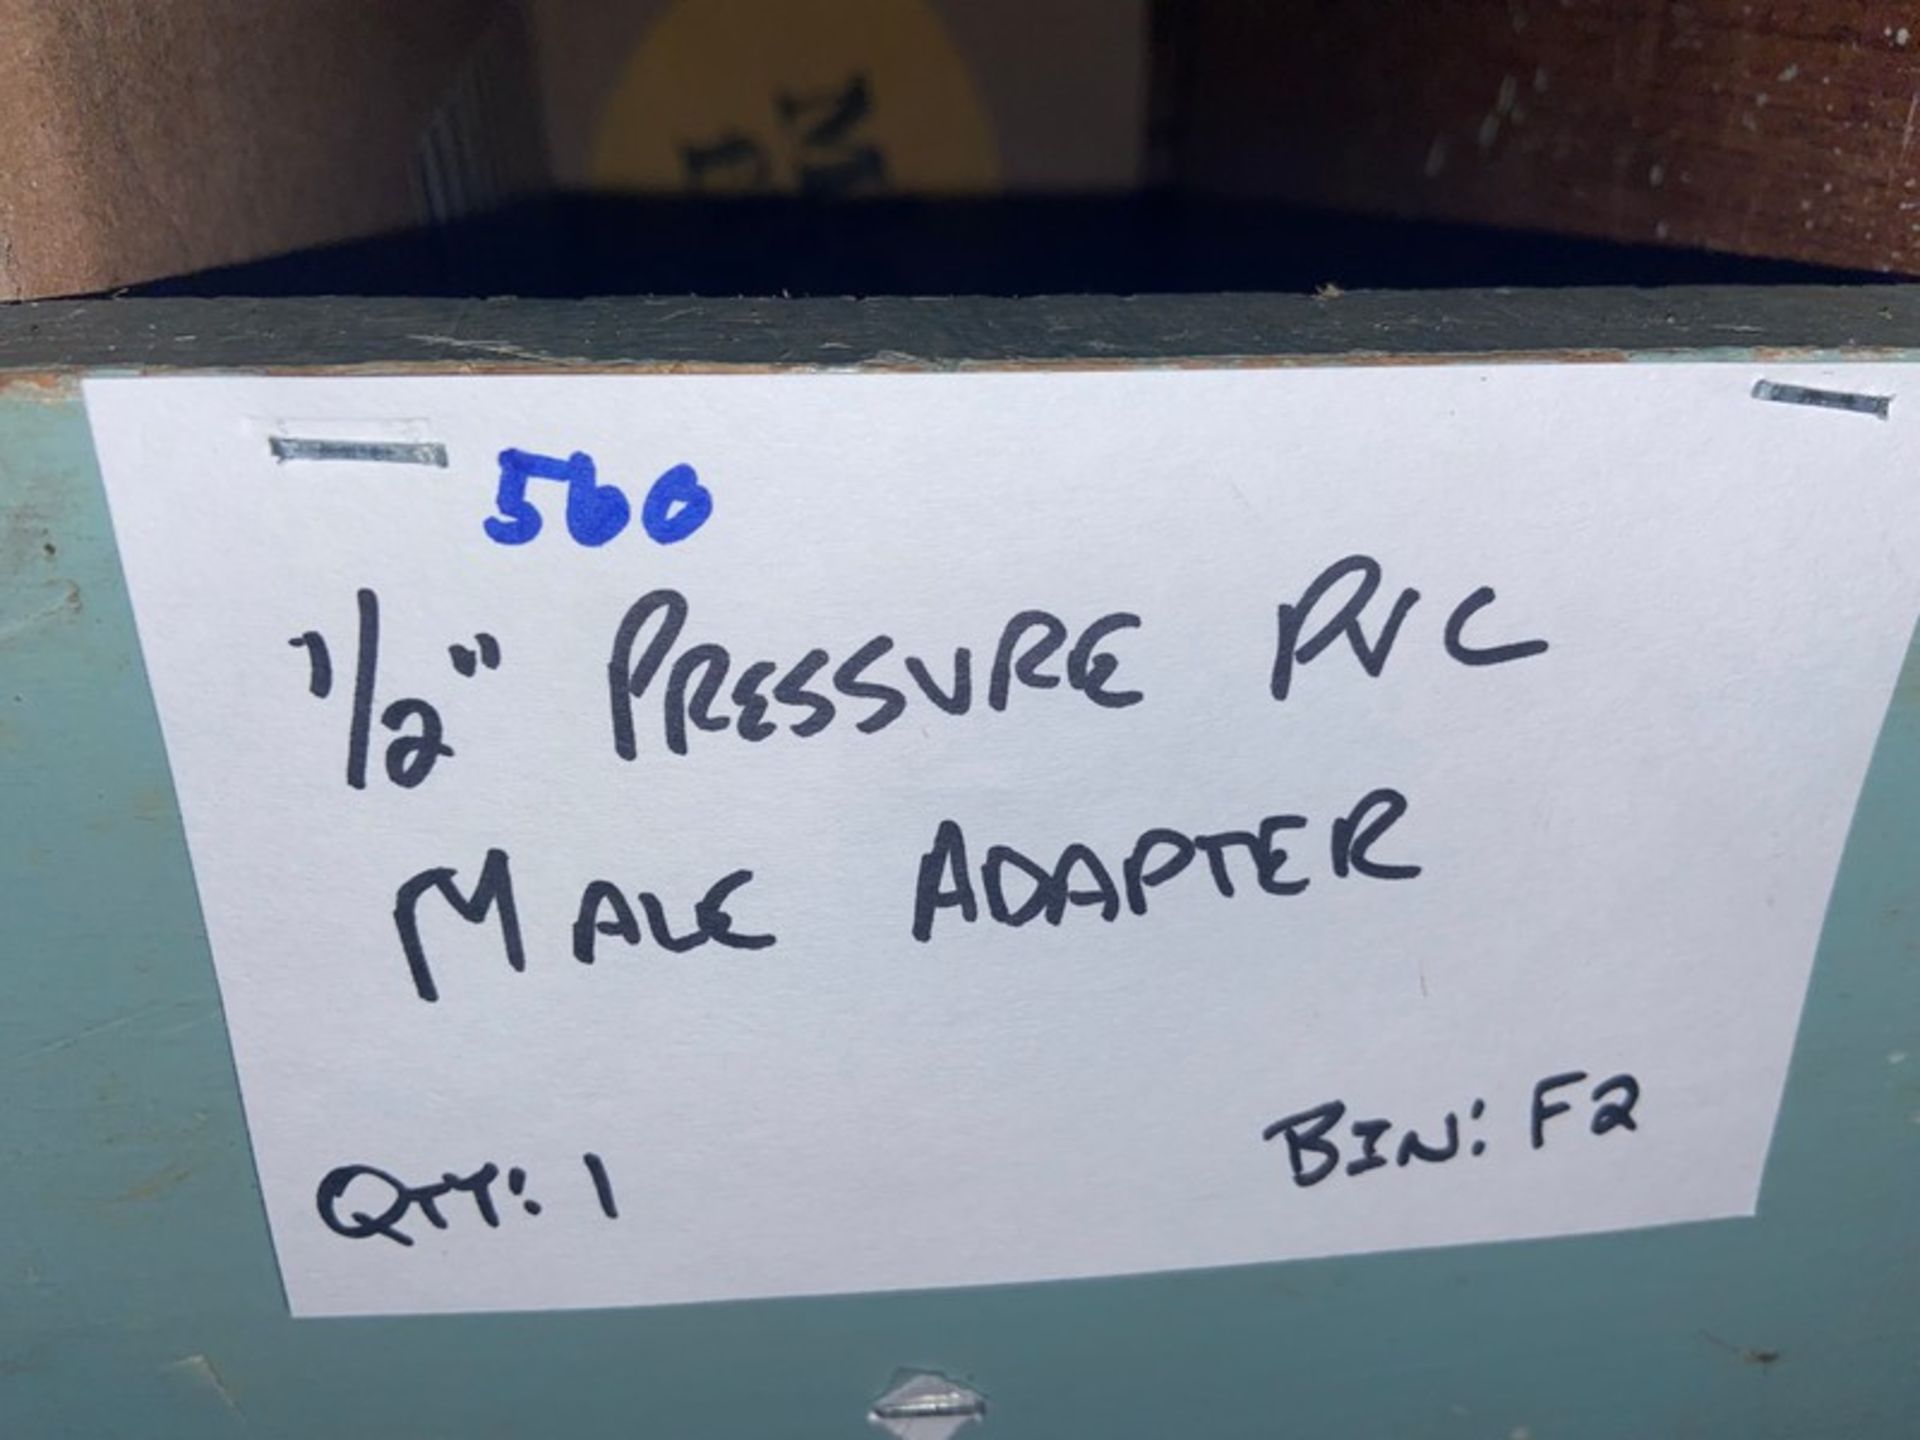 (1) 1/2" Pressure PVC Male Adapter (Bin: F2); (6) 1/2" Pressure PVC Female Adapter (LOCATED IN - Image 10 of 11